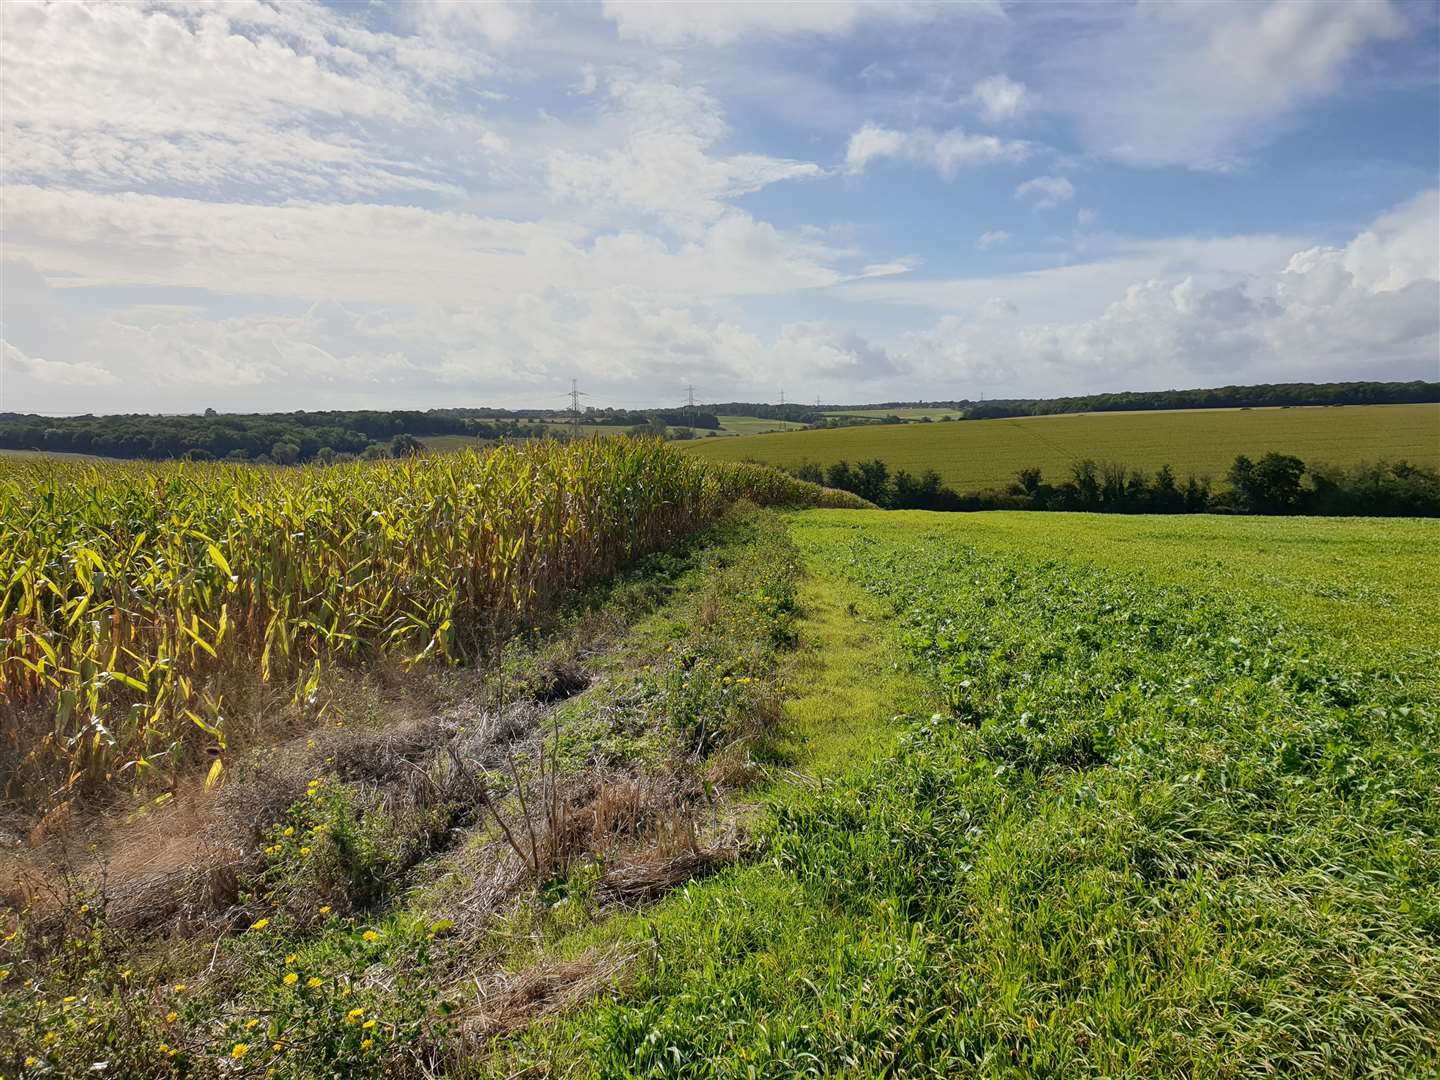 The sprawling solar farm will cover 250 acres of farmland near Canterbury